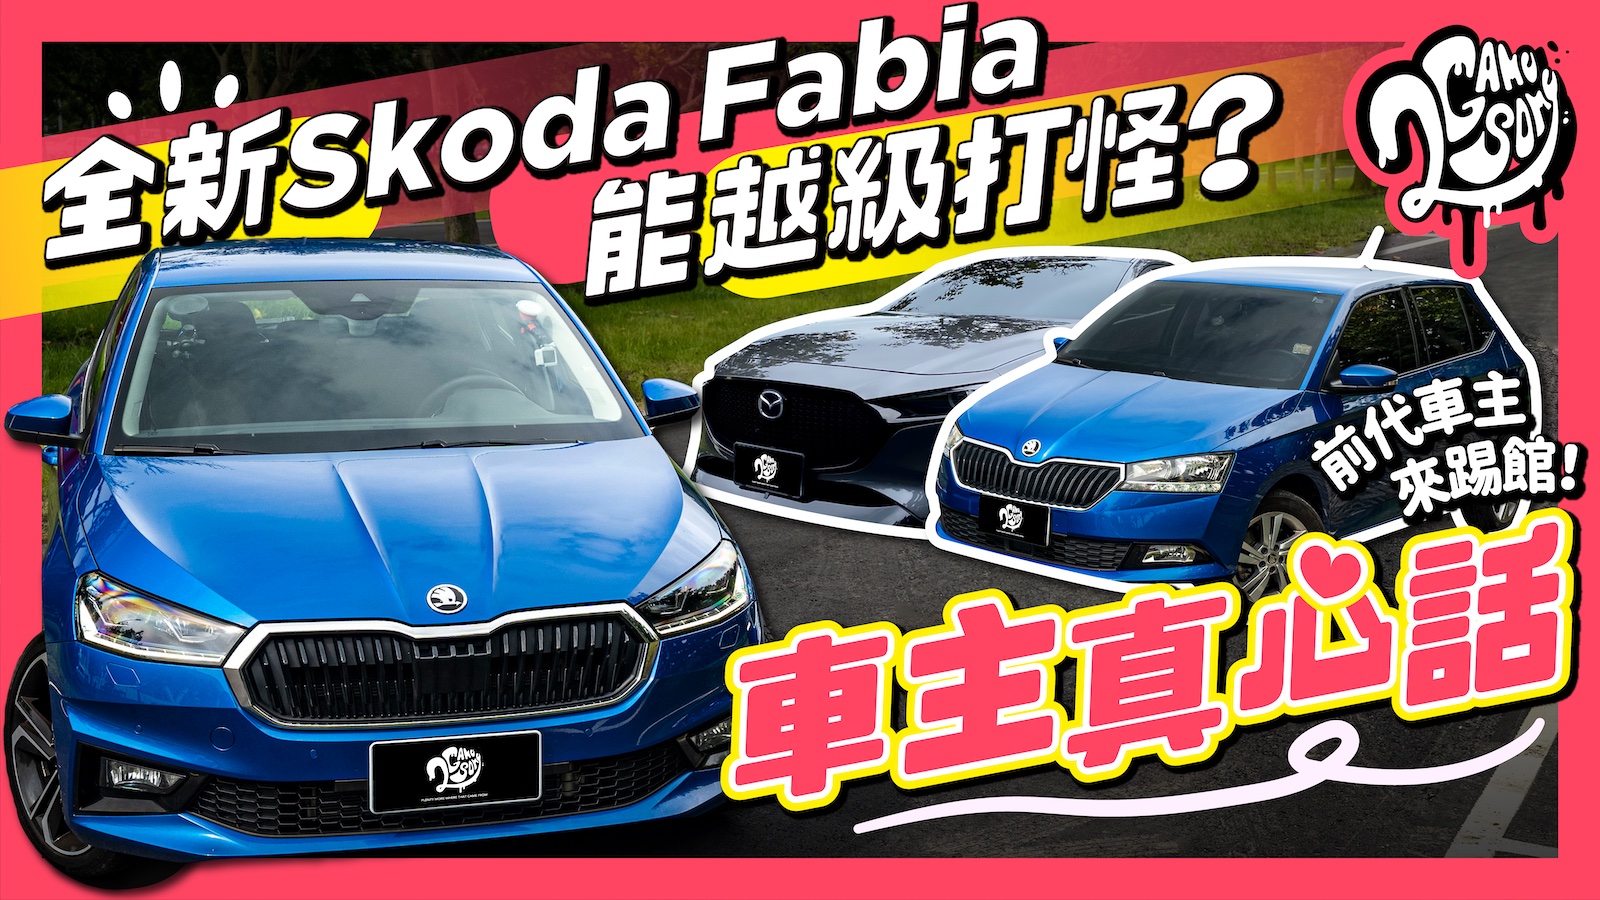 【車主真心話】全新 Skoda Fabia 能越級打怪？前代 Fabia & Mazda3 車主來踢館！